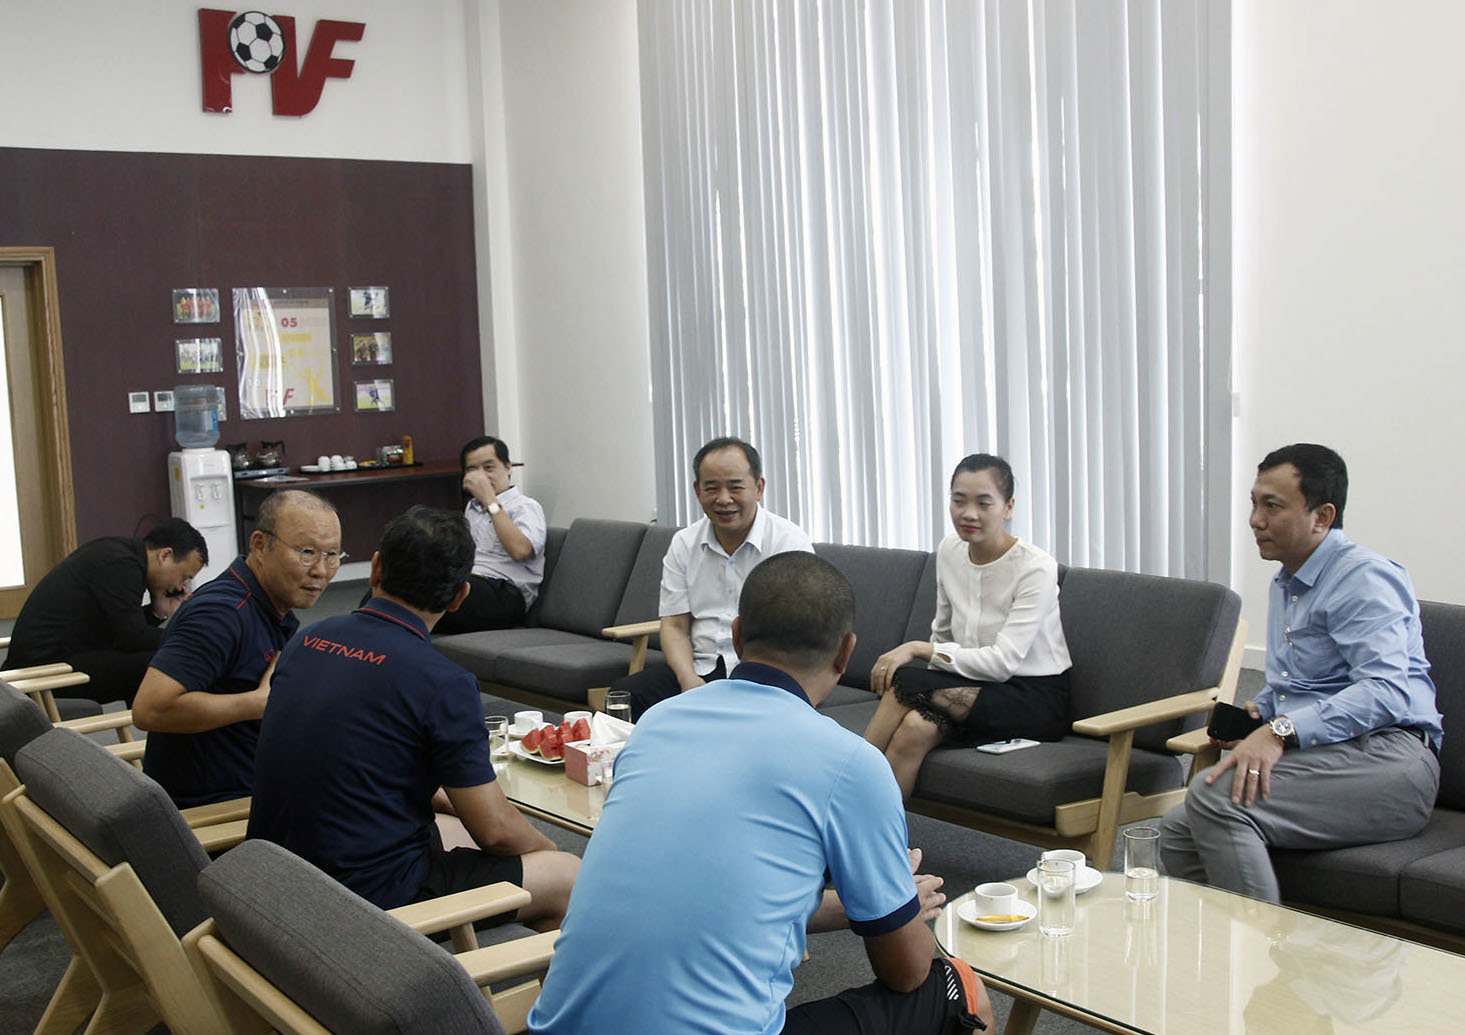 HLV Park từ chối về Hàn Quốc theo đề nghị của VFF: ĐT Việt Nam sáng cửa phá siêu kỷ lục của Thái Lan